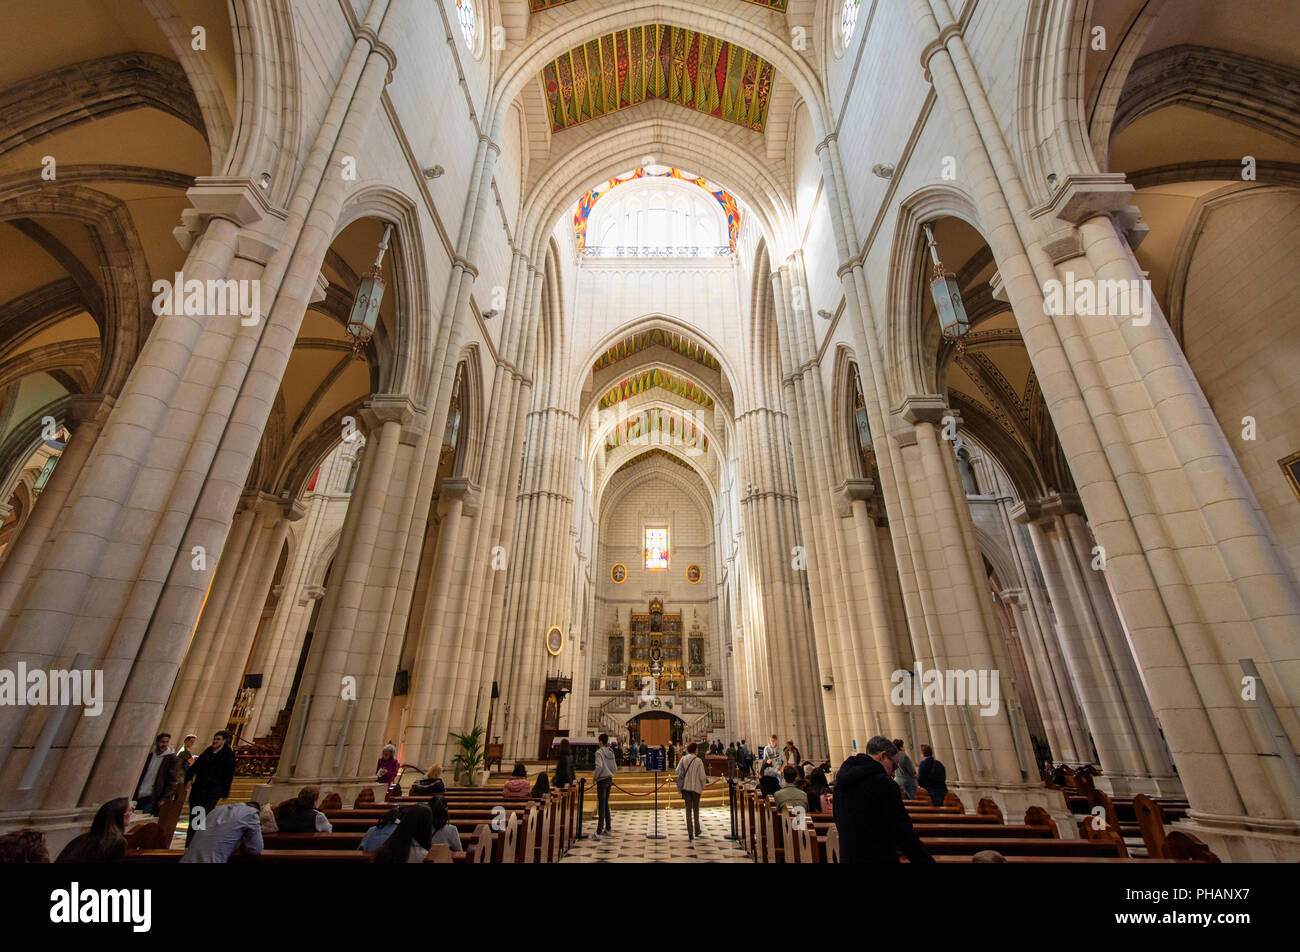 Interno della cattedrale di Almudena (Catedral de la Almudena), Madrid. Spagna Foto Stock